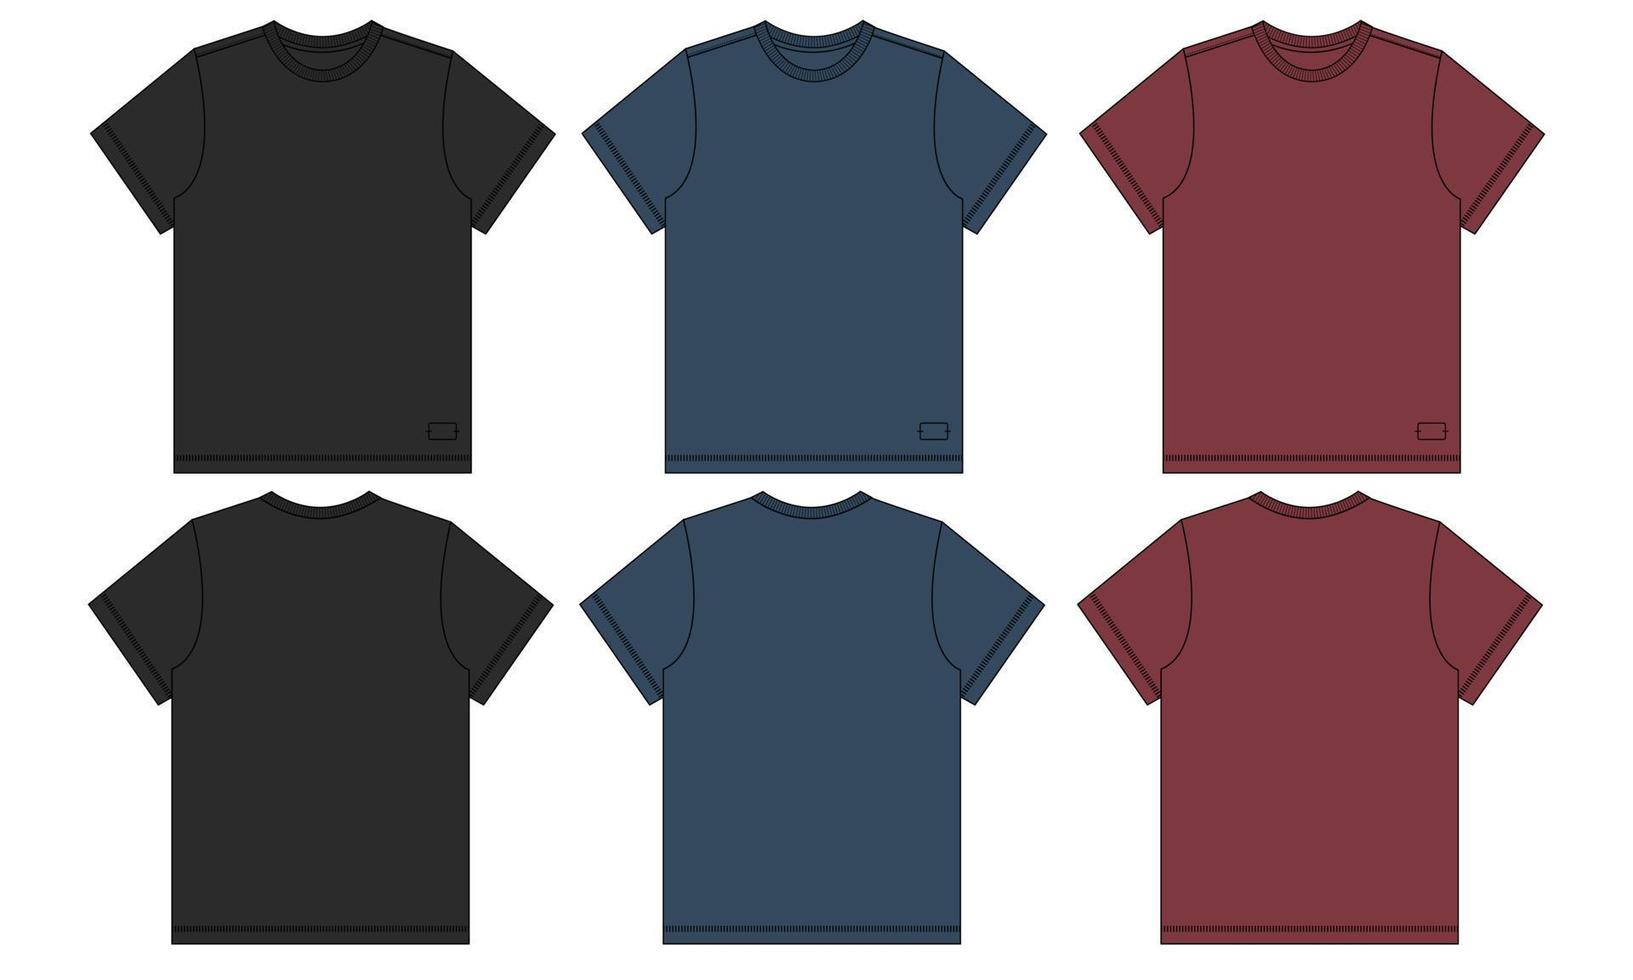 schwarze marineblaue und rote farbe kurzarm basic t-shirt insgesamt technische mode flache skizze vektor illustration vorlage vorder- und rückansichten. Bekleidungsmodell für Männer und Jungen.